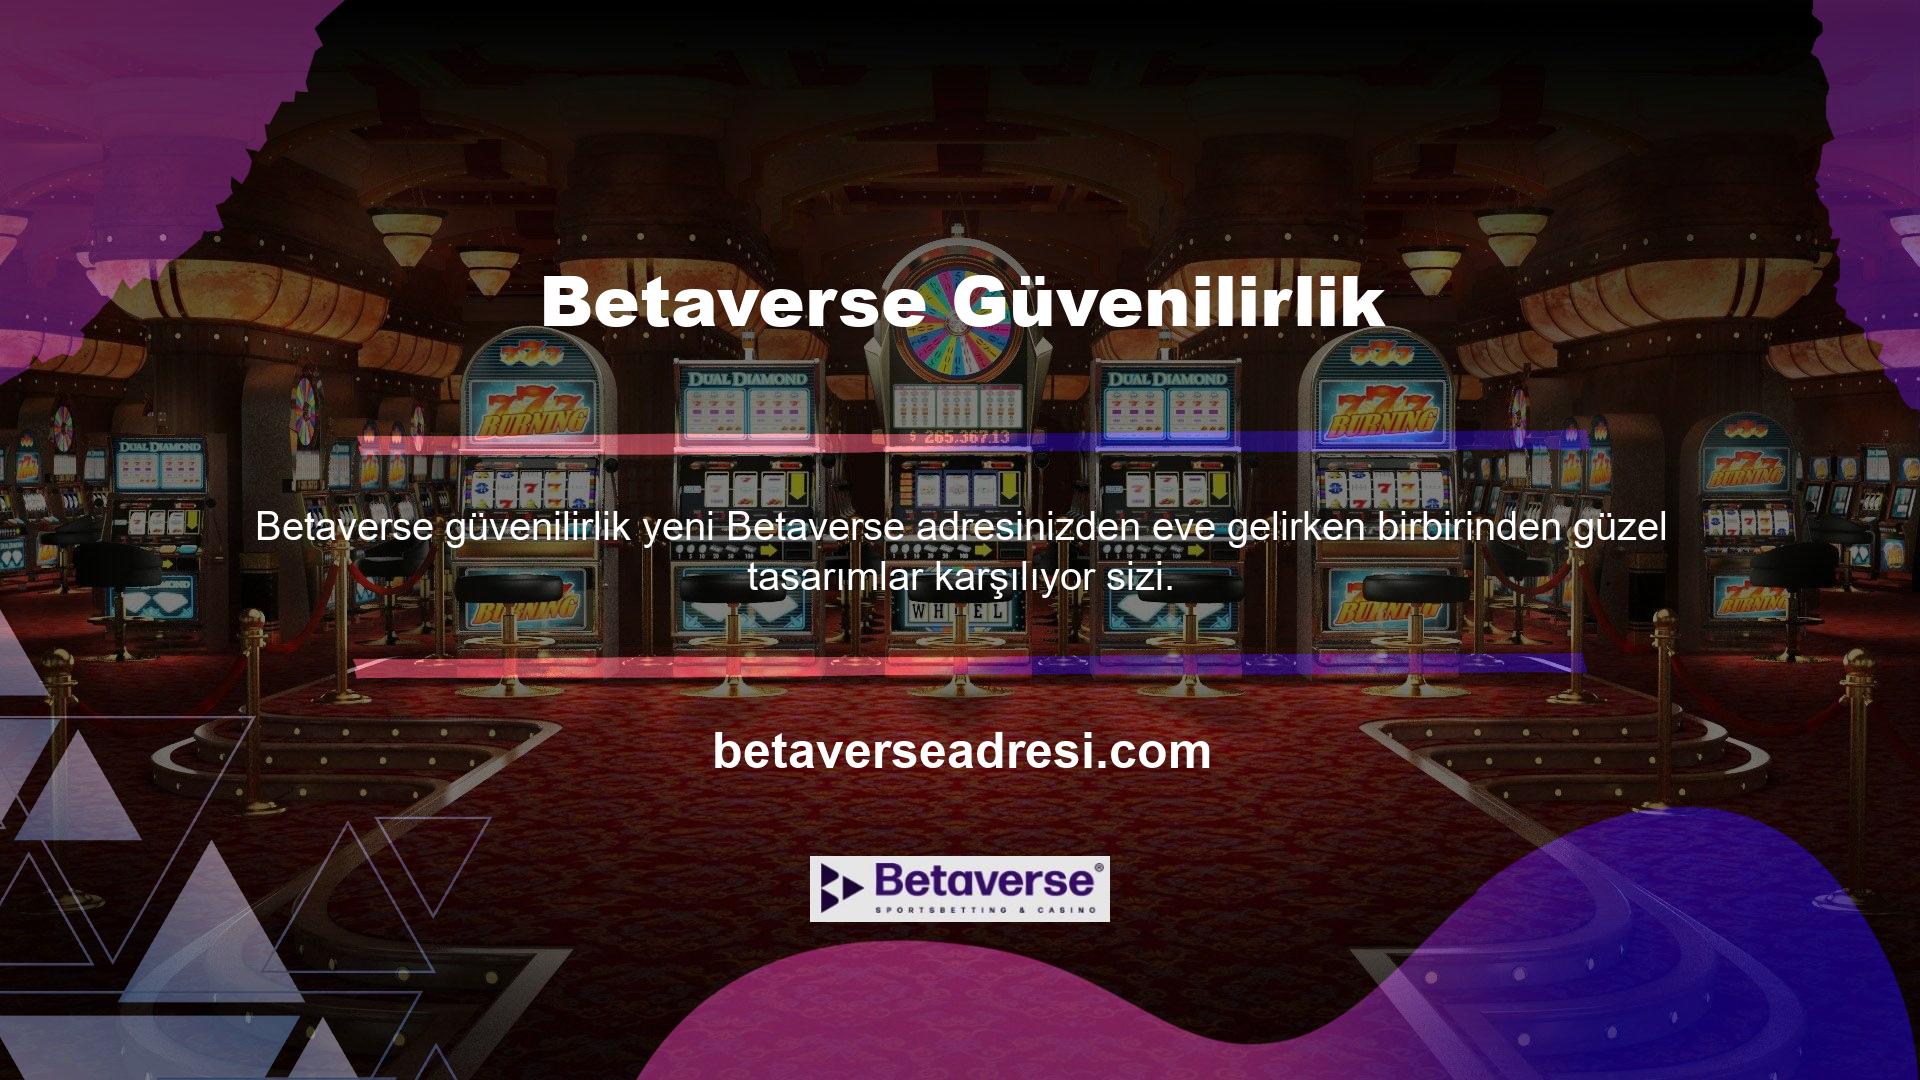 Betaverse, tema, çizgiler ve grafikler açısından kullanım kolaylığı açısından en iyi çevrimiçi casino sitelerinden biridir